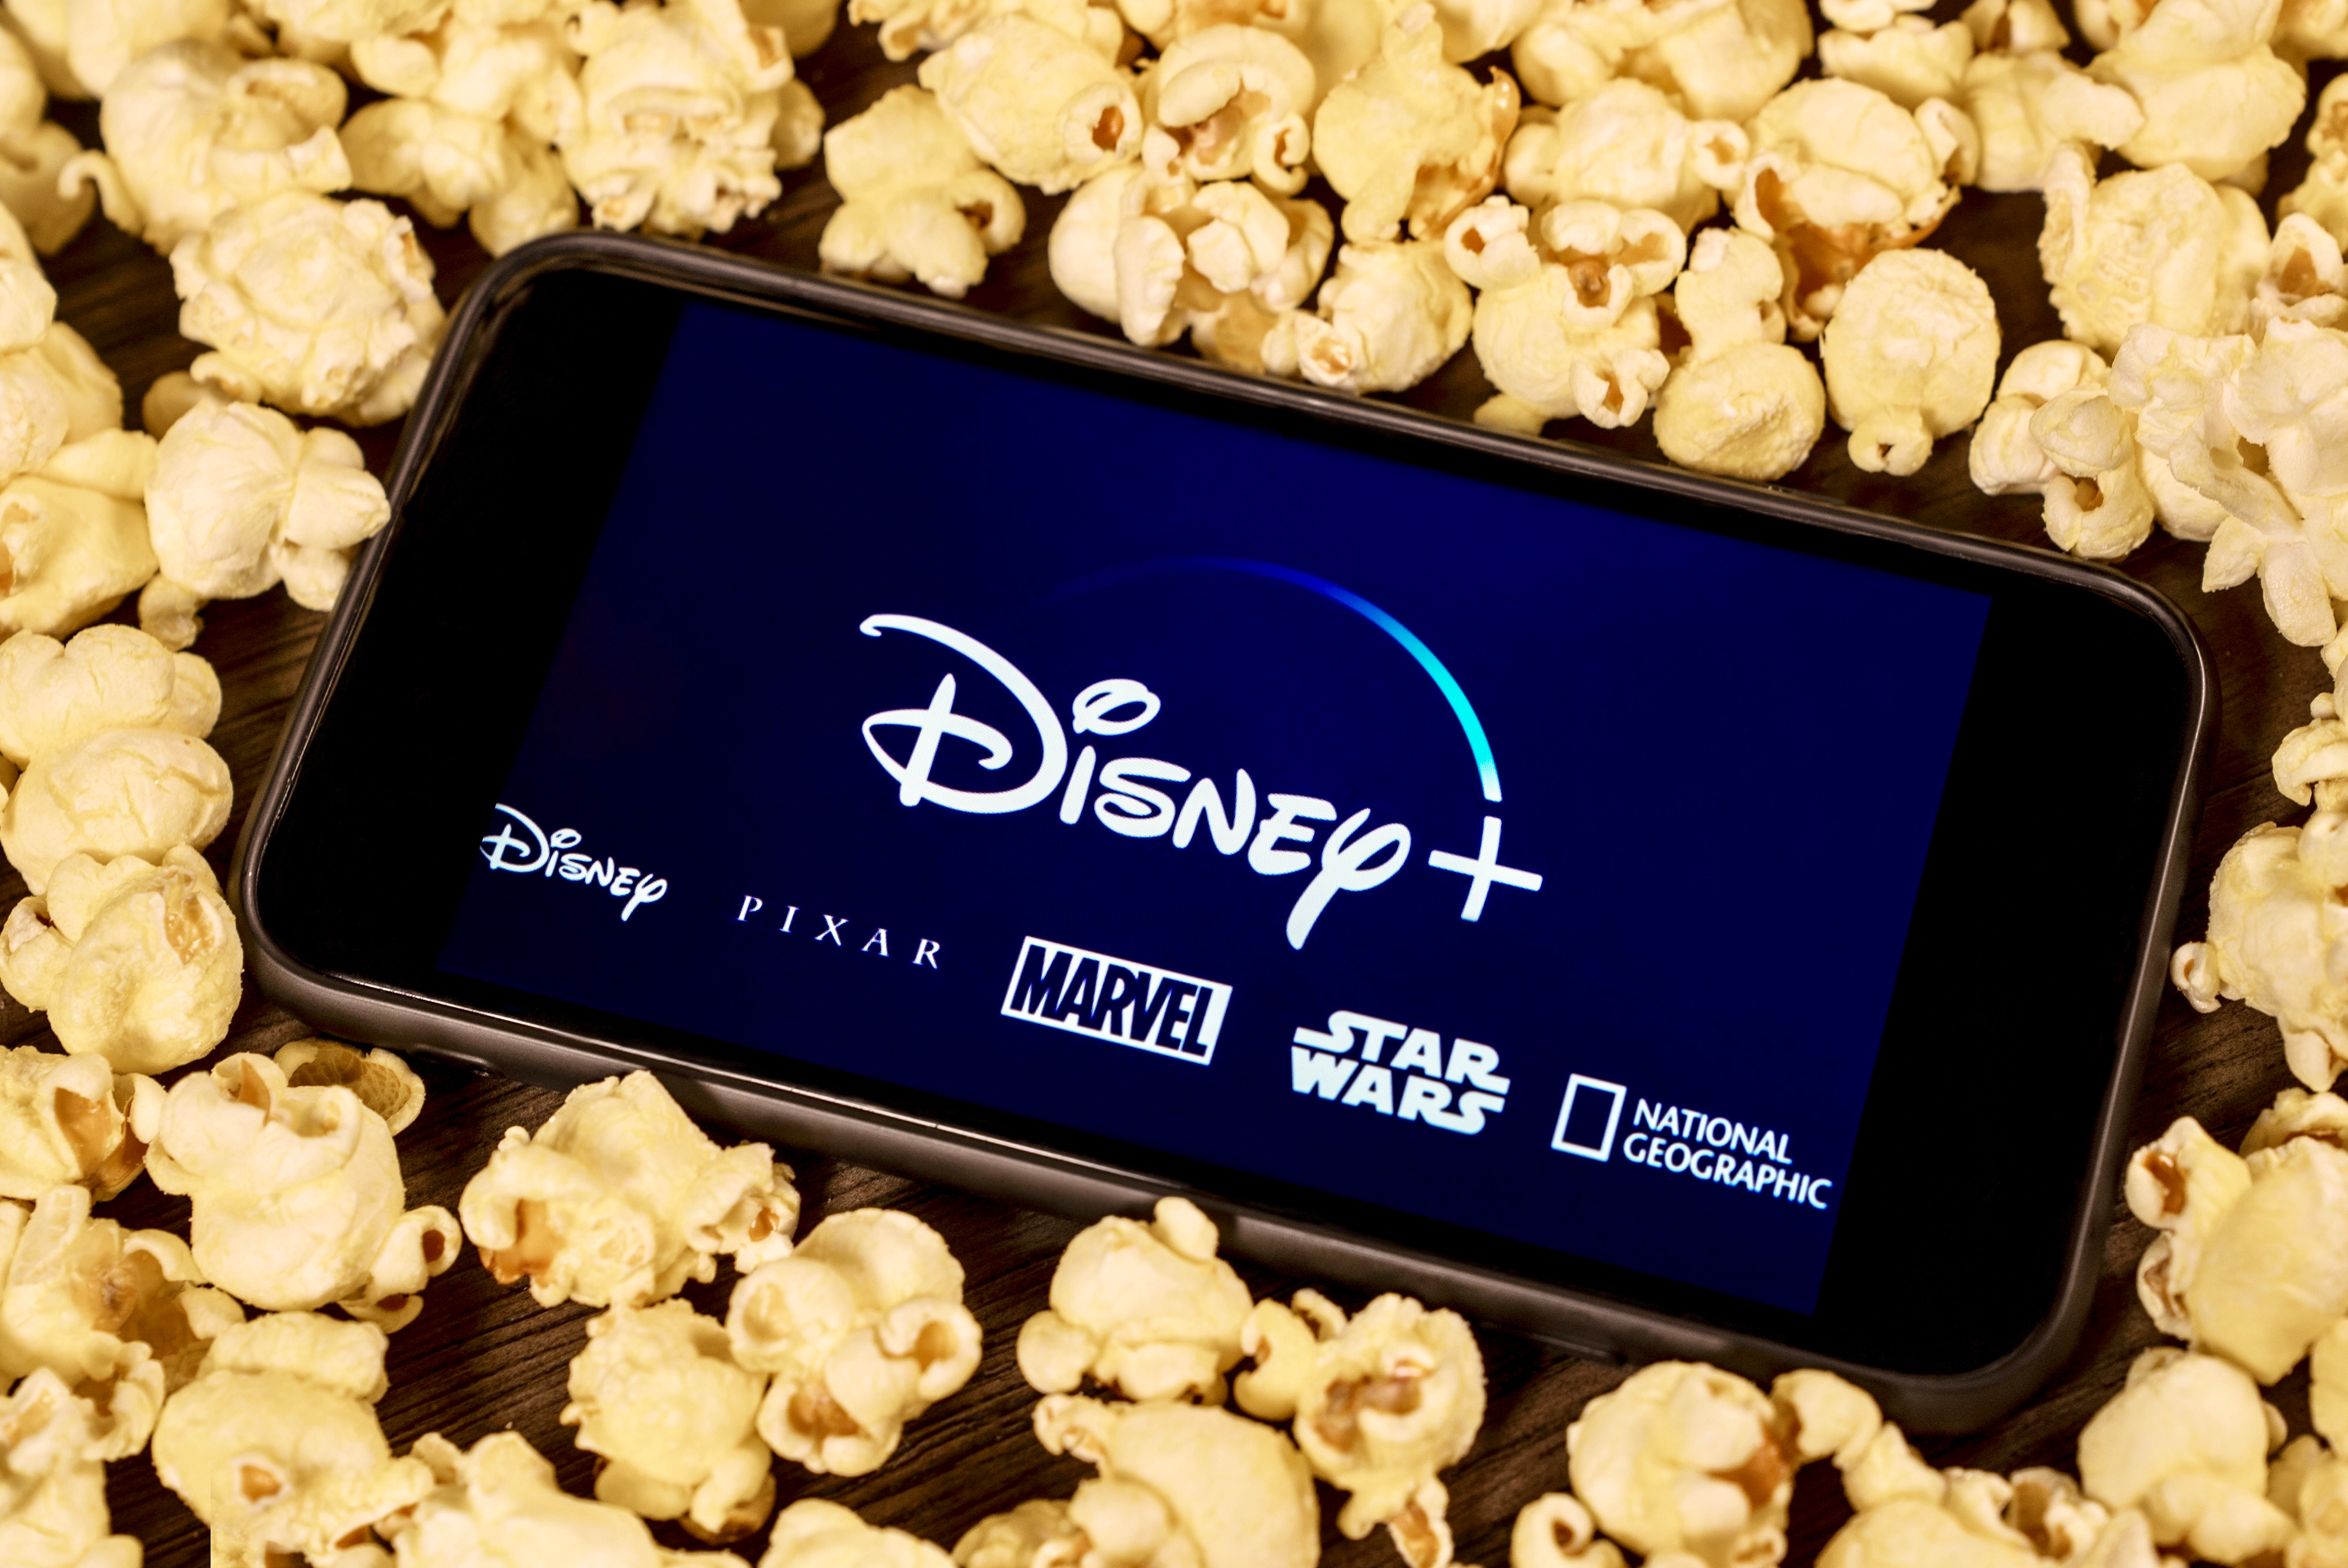 Con su plataforma que ofrece películas y series originales, Disney+ busca hacerle competencia a Netflix. (Shutterstock) 